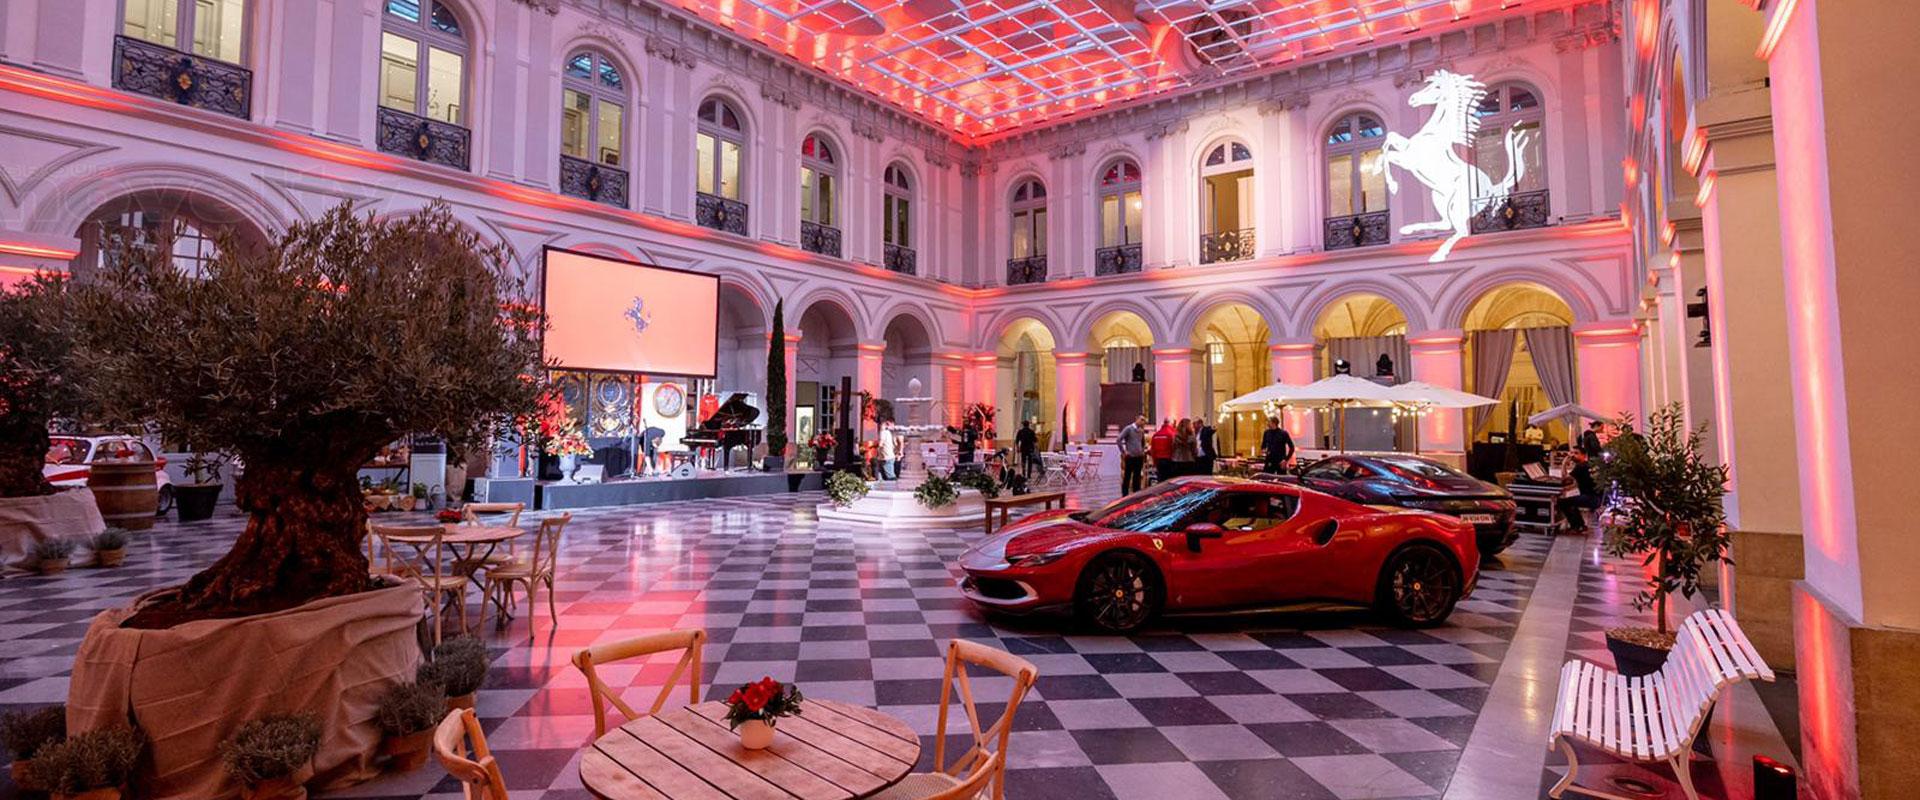 Visuel 10 ans de la concession Ferrari Bordeaux avec Novelty 